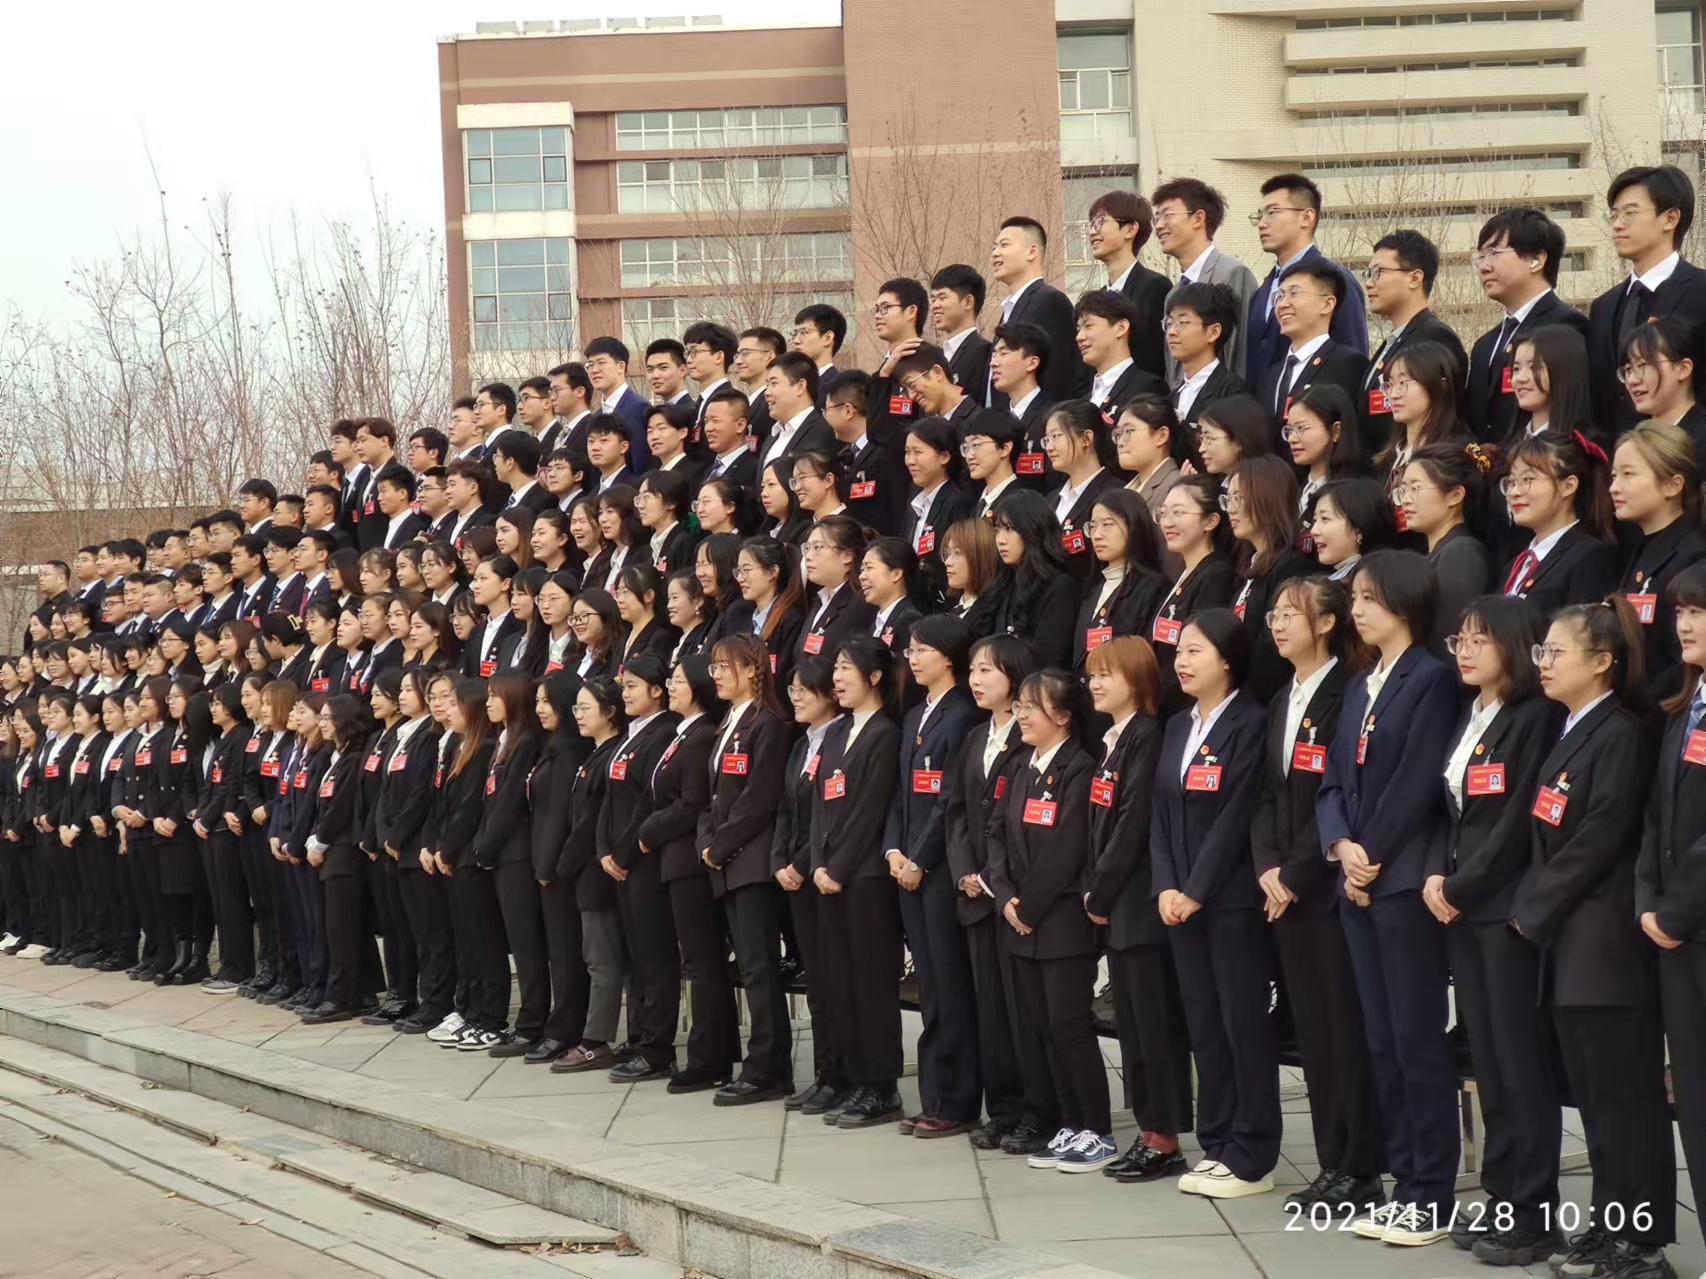 锐图大合影在中国医科大学拍摄200人学生代表合影